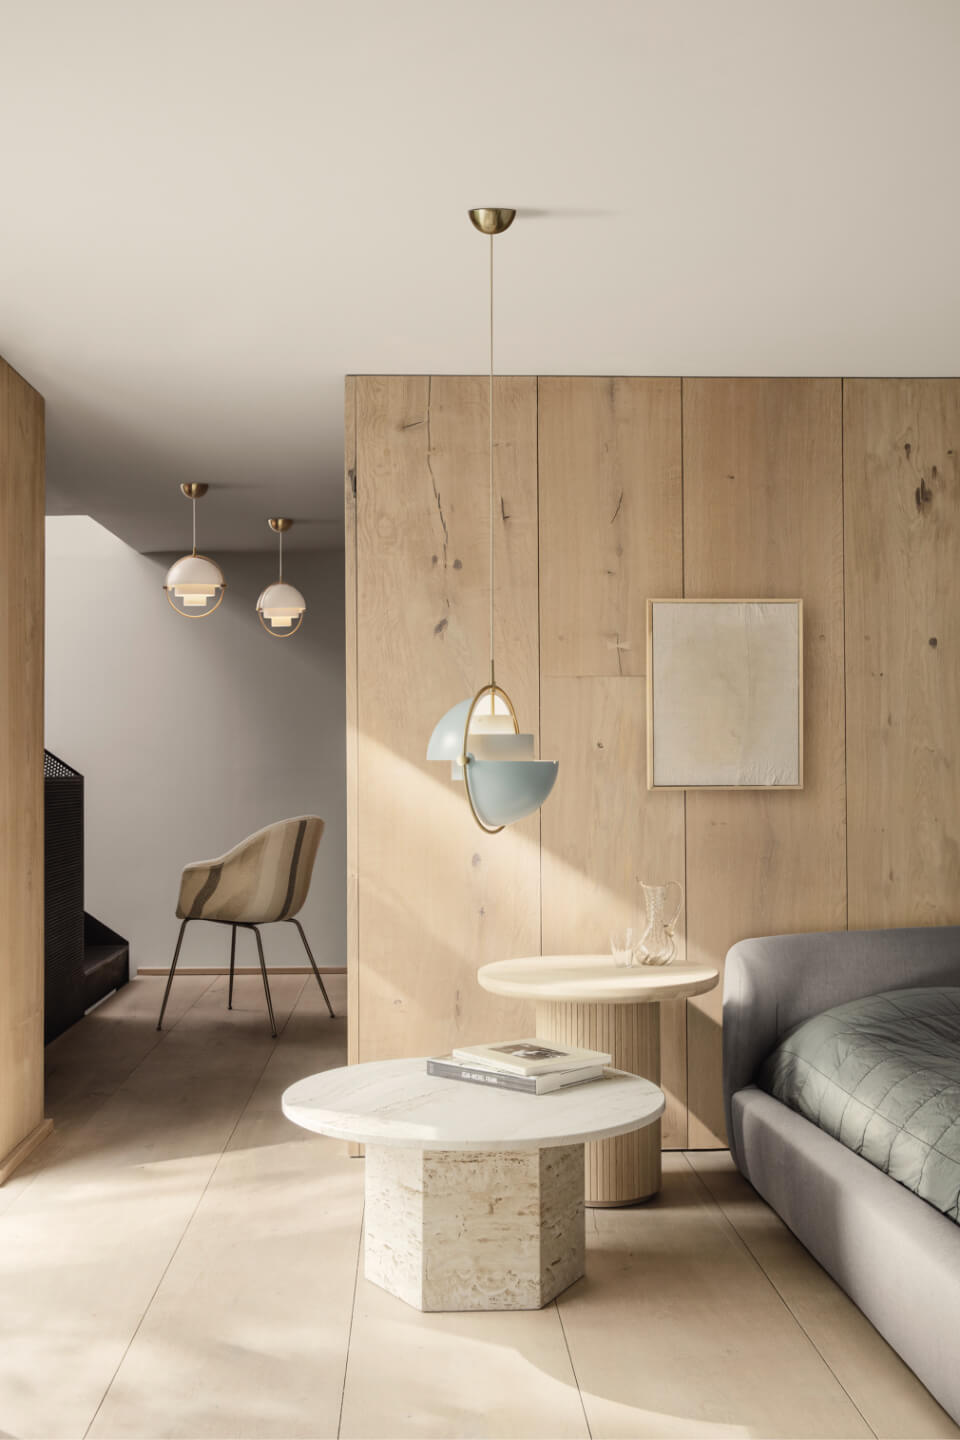 GUBIは、歴史を超えて愛されるデザインに、現代的な視点を取り入れた家具づくりも特徴。ペンダント照明「Multi-Lite Pendant-Dia.36-Brass base」は、1970年代にデザインされた照明を、今のインテリアにマッチする素材や色使いに仕上げている